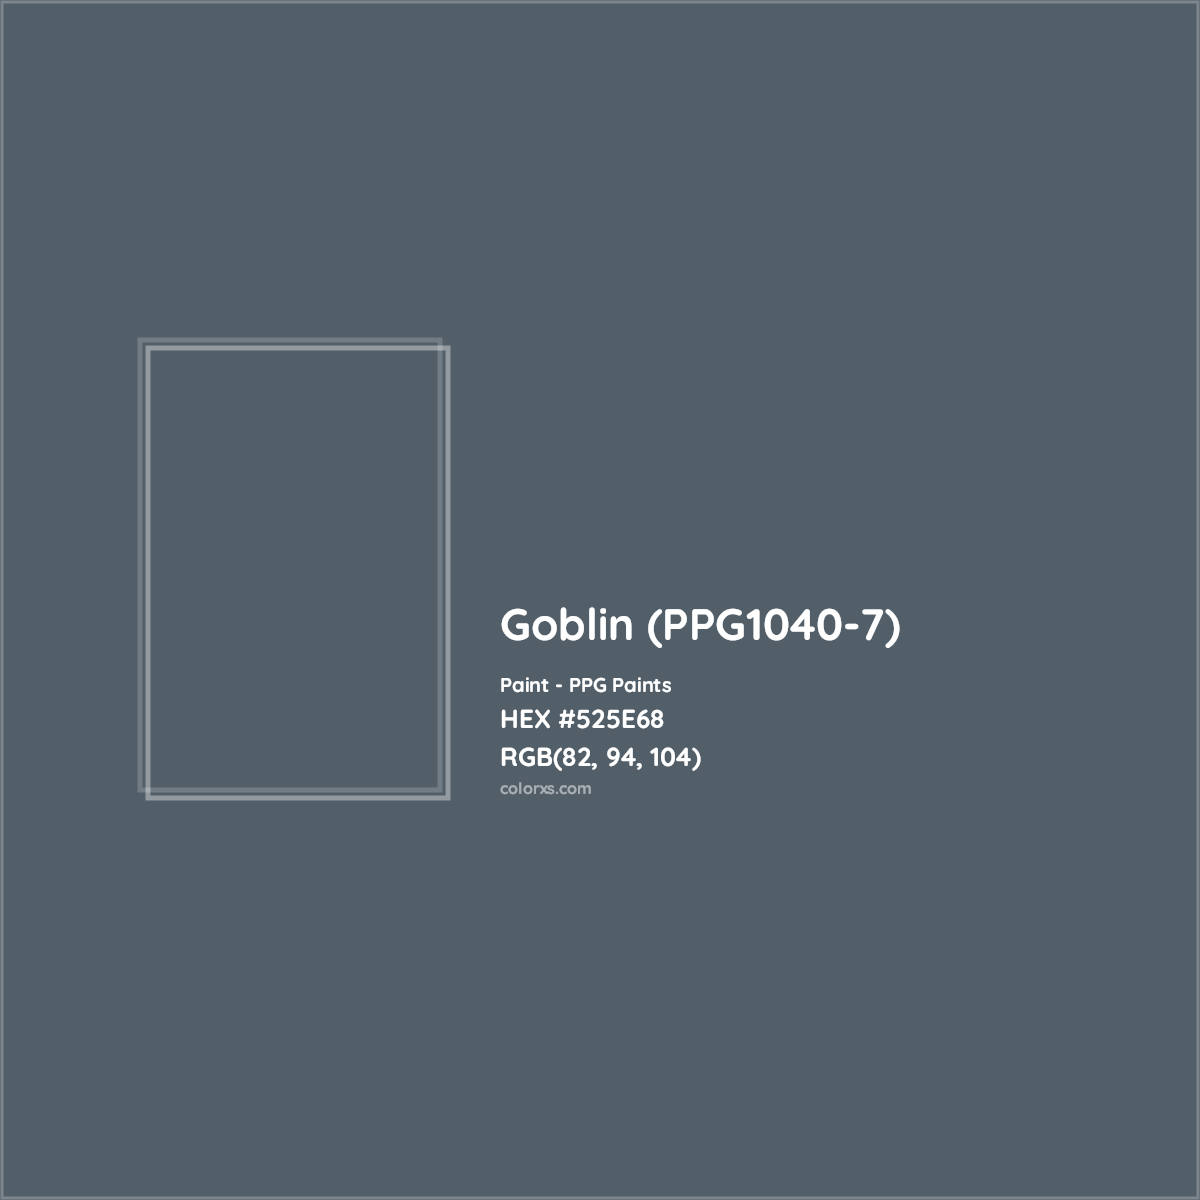 HEX #525E68 Goblin (PPG1040-7) Paint PPG Paints - Color Code